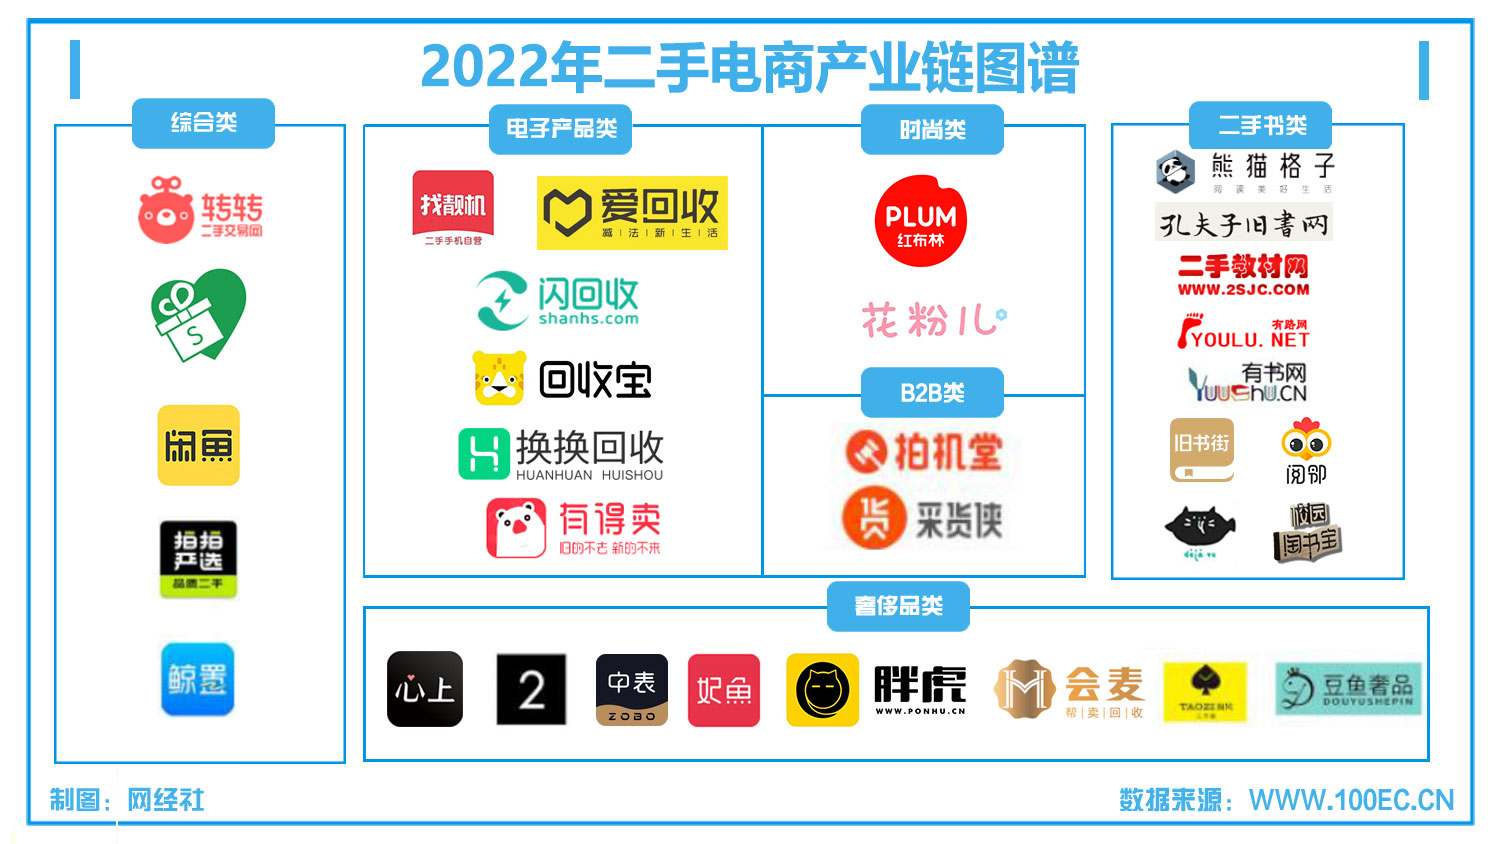 2022年二手电商产业链图谱.jpg